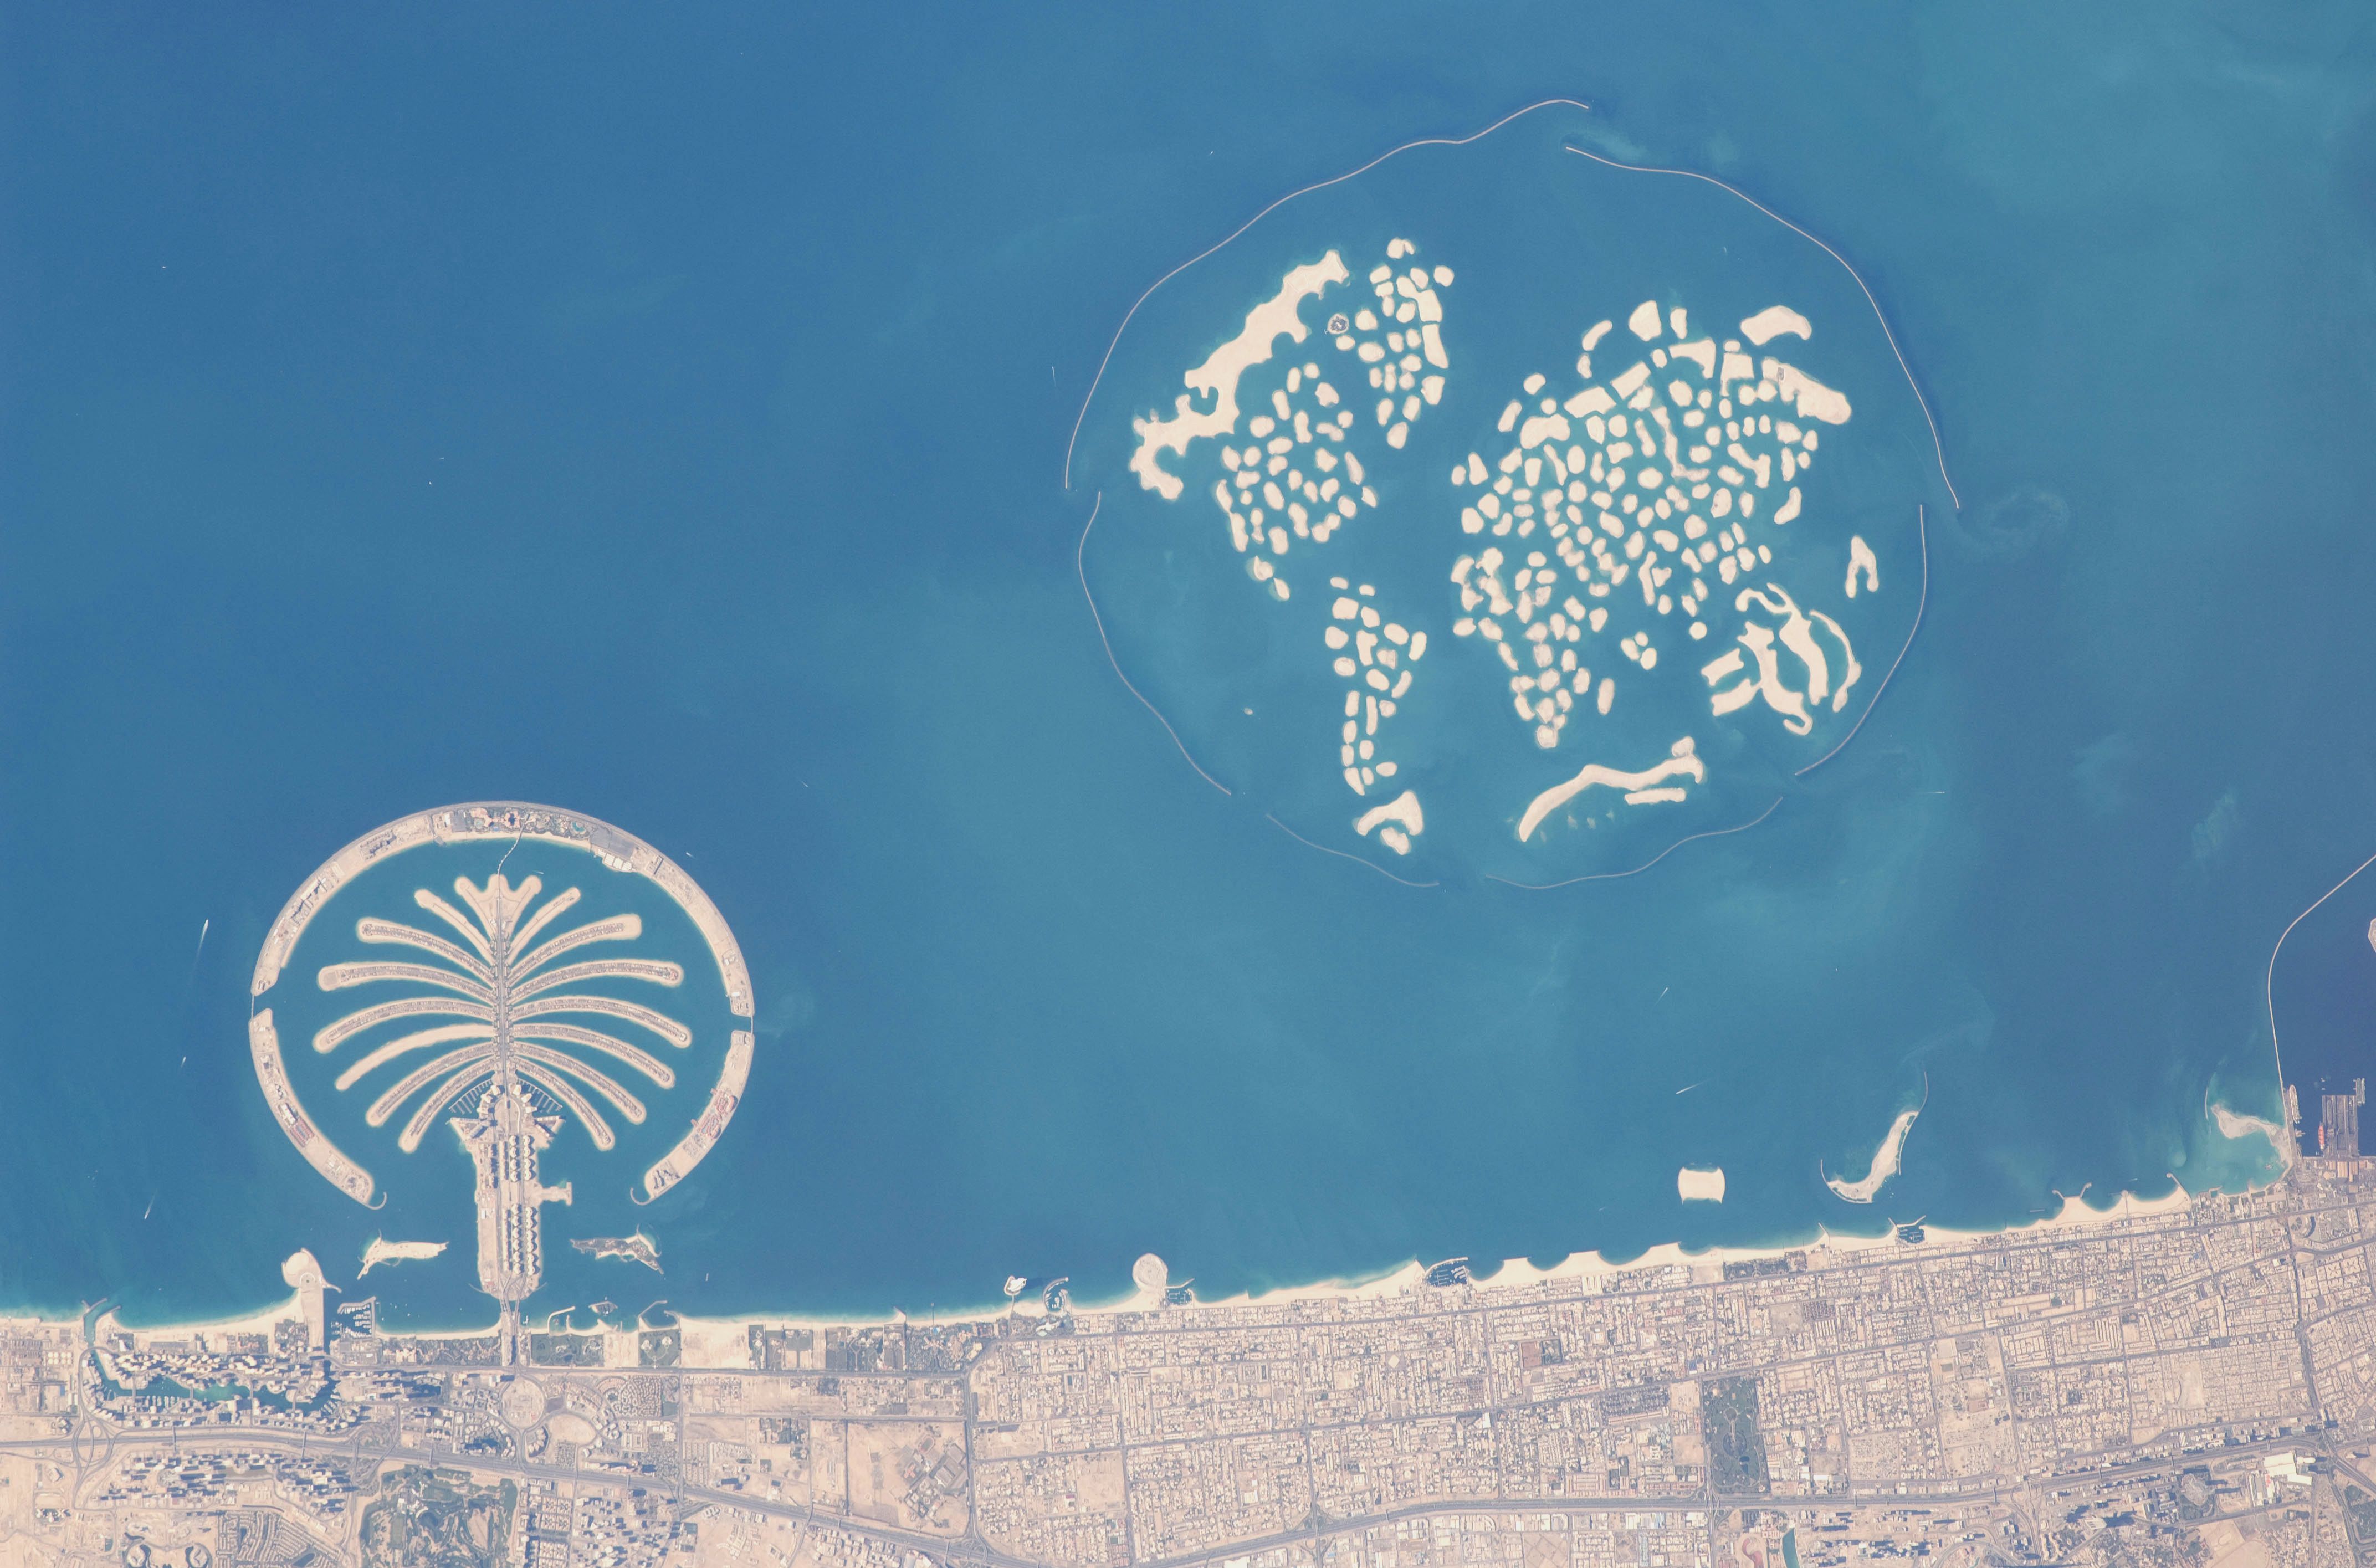 Imagem de satélite mostra o arquipélago próximo à costa de Dubai (Reprodução).